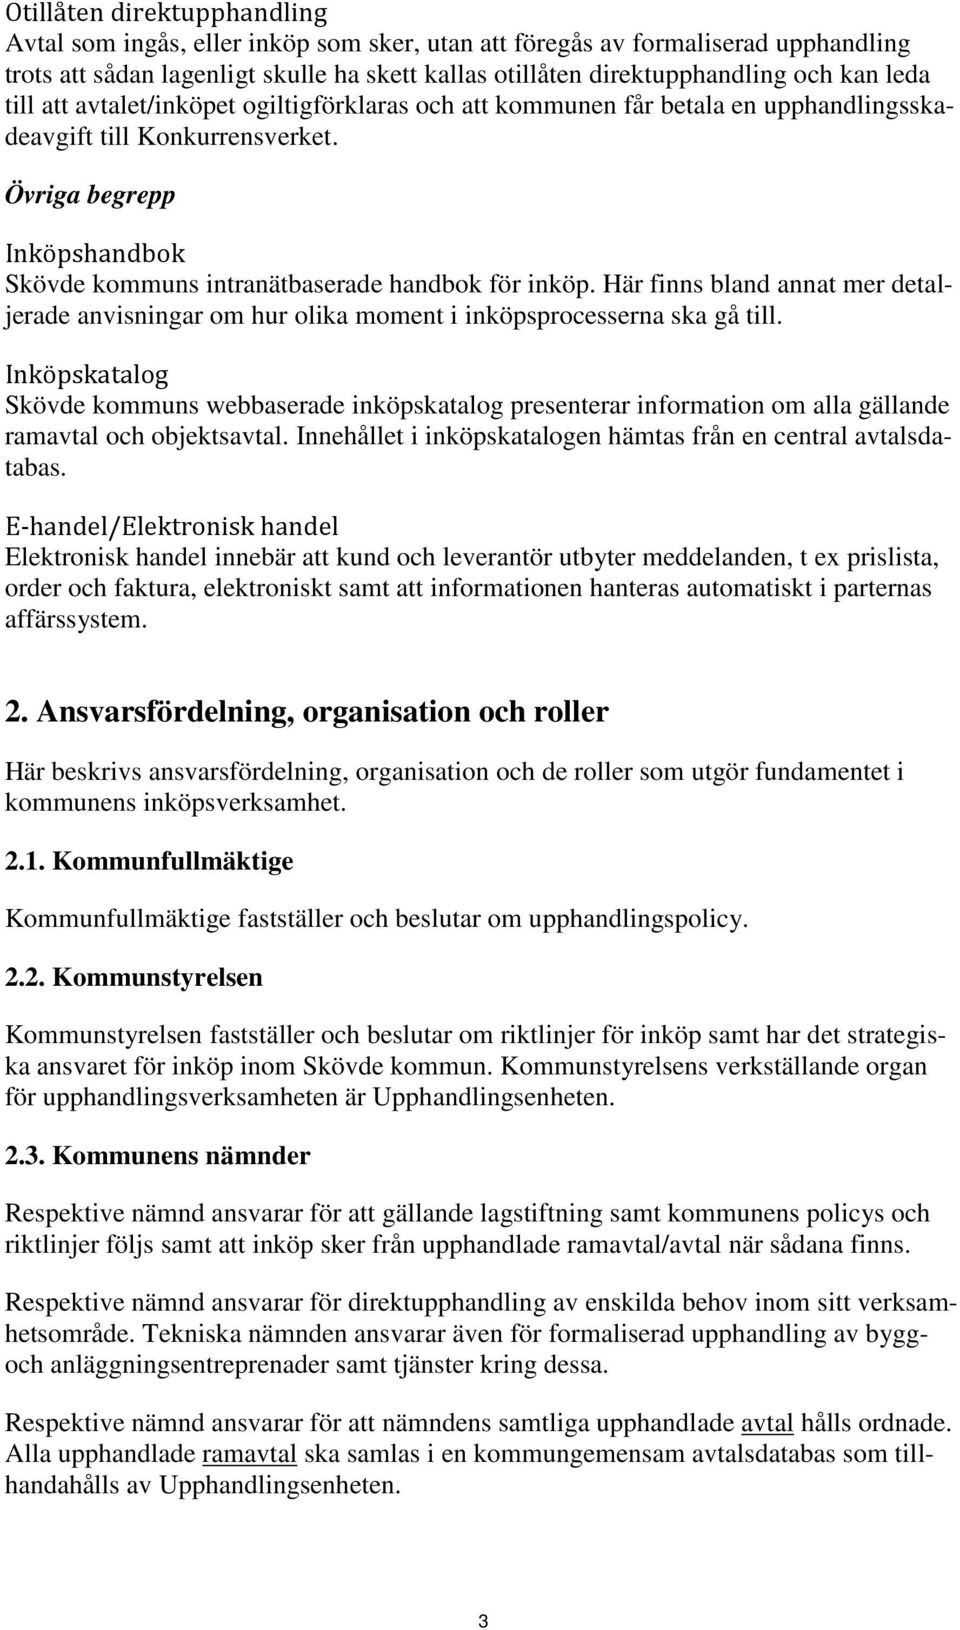 Övriga begrepp Inköpshandbok Skövde kommuns intranätbaserade handbok för inköp. Här finns bland annat mer detaljerade anvisningar om hur olika moment i inköpsprocesserna ska gå till.